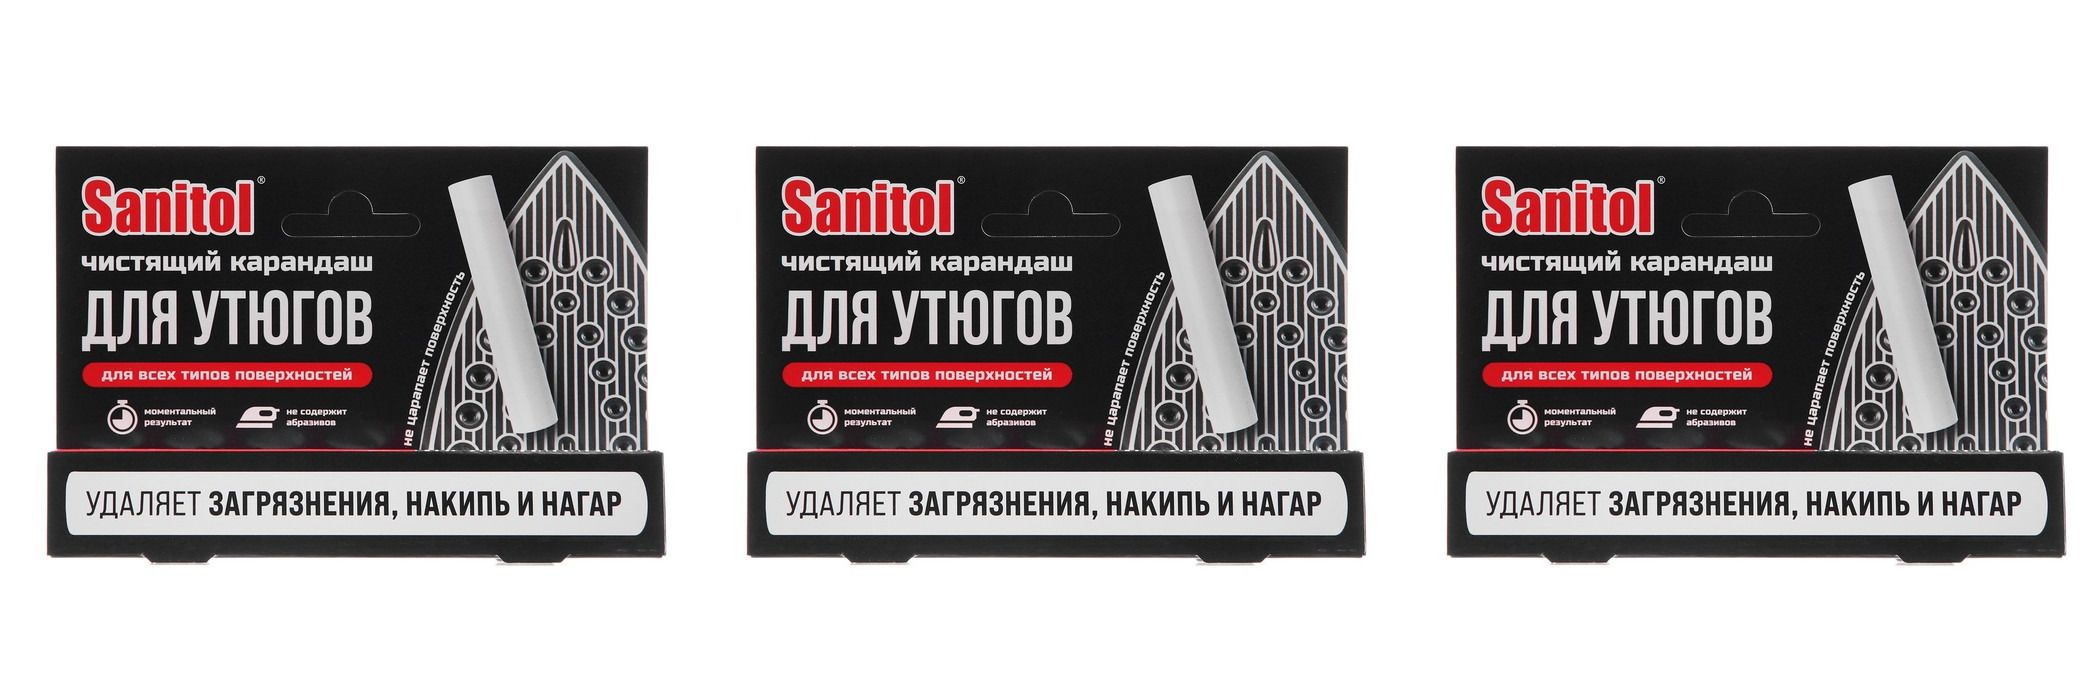 Чистящий карандаш для утюгов Sanitol 3шт